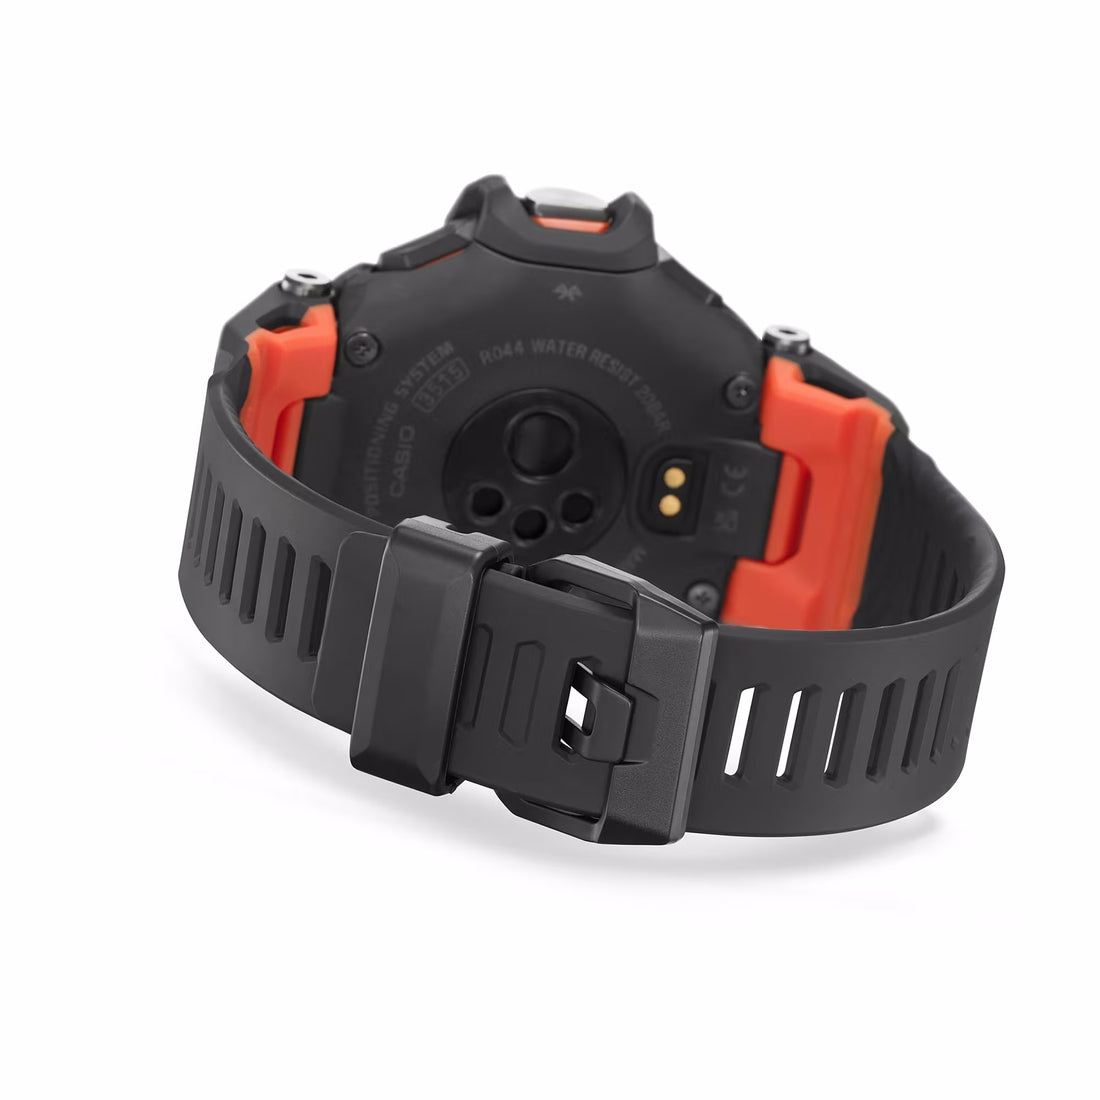 Orologio G-Shock con GPS GBD-H2000-1AER nero e rosso